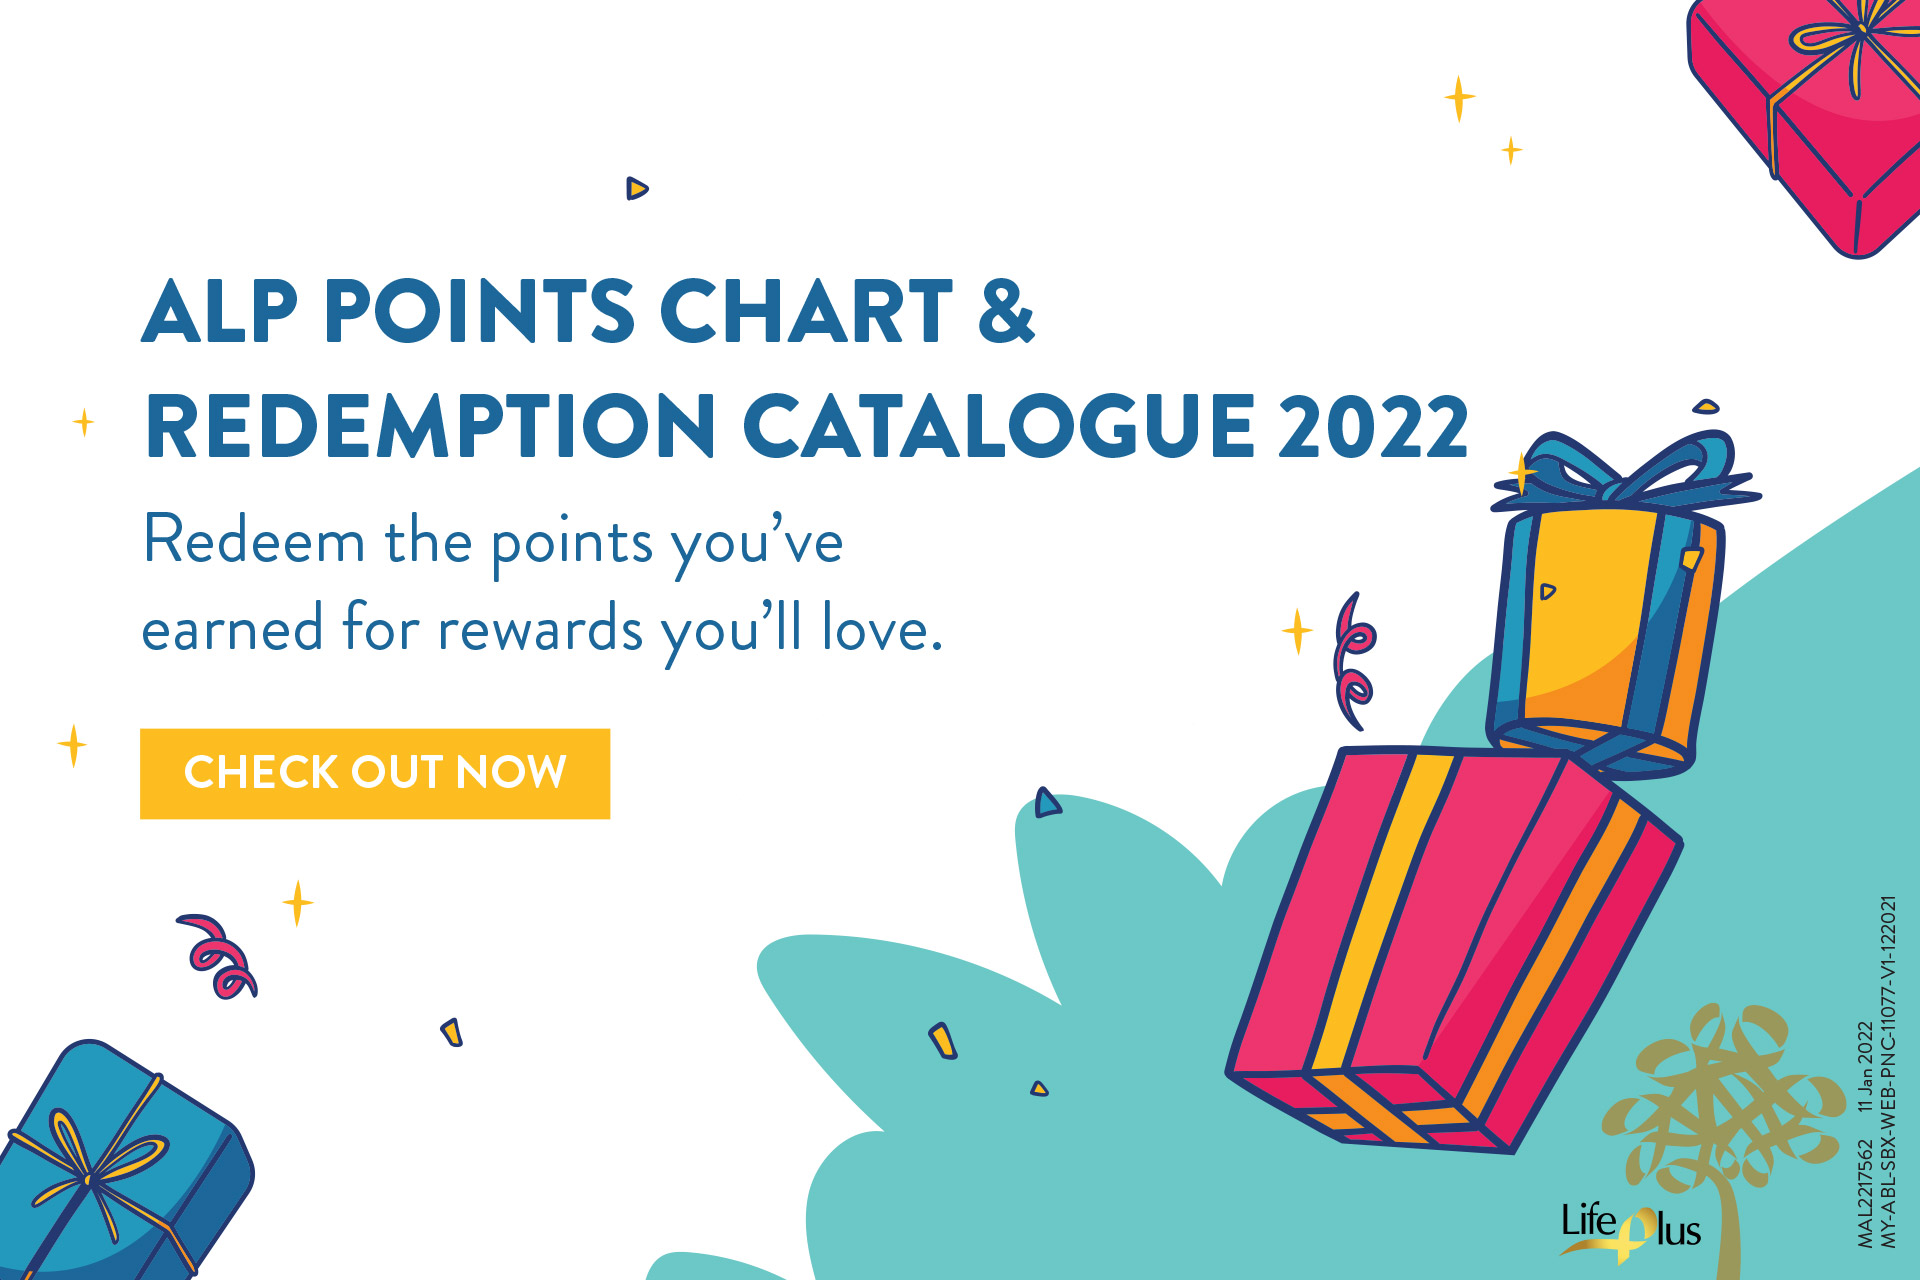 Redemption Catalogue 2022